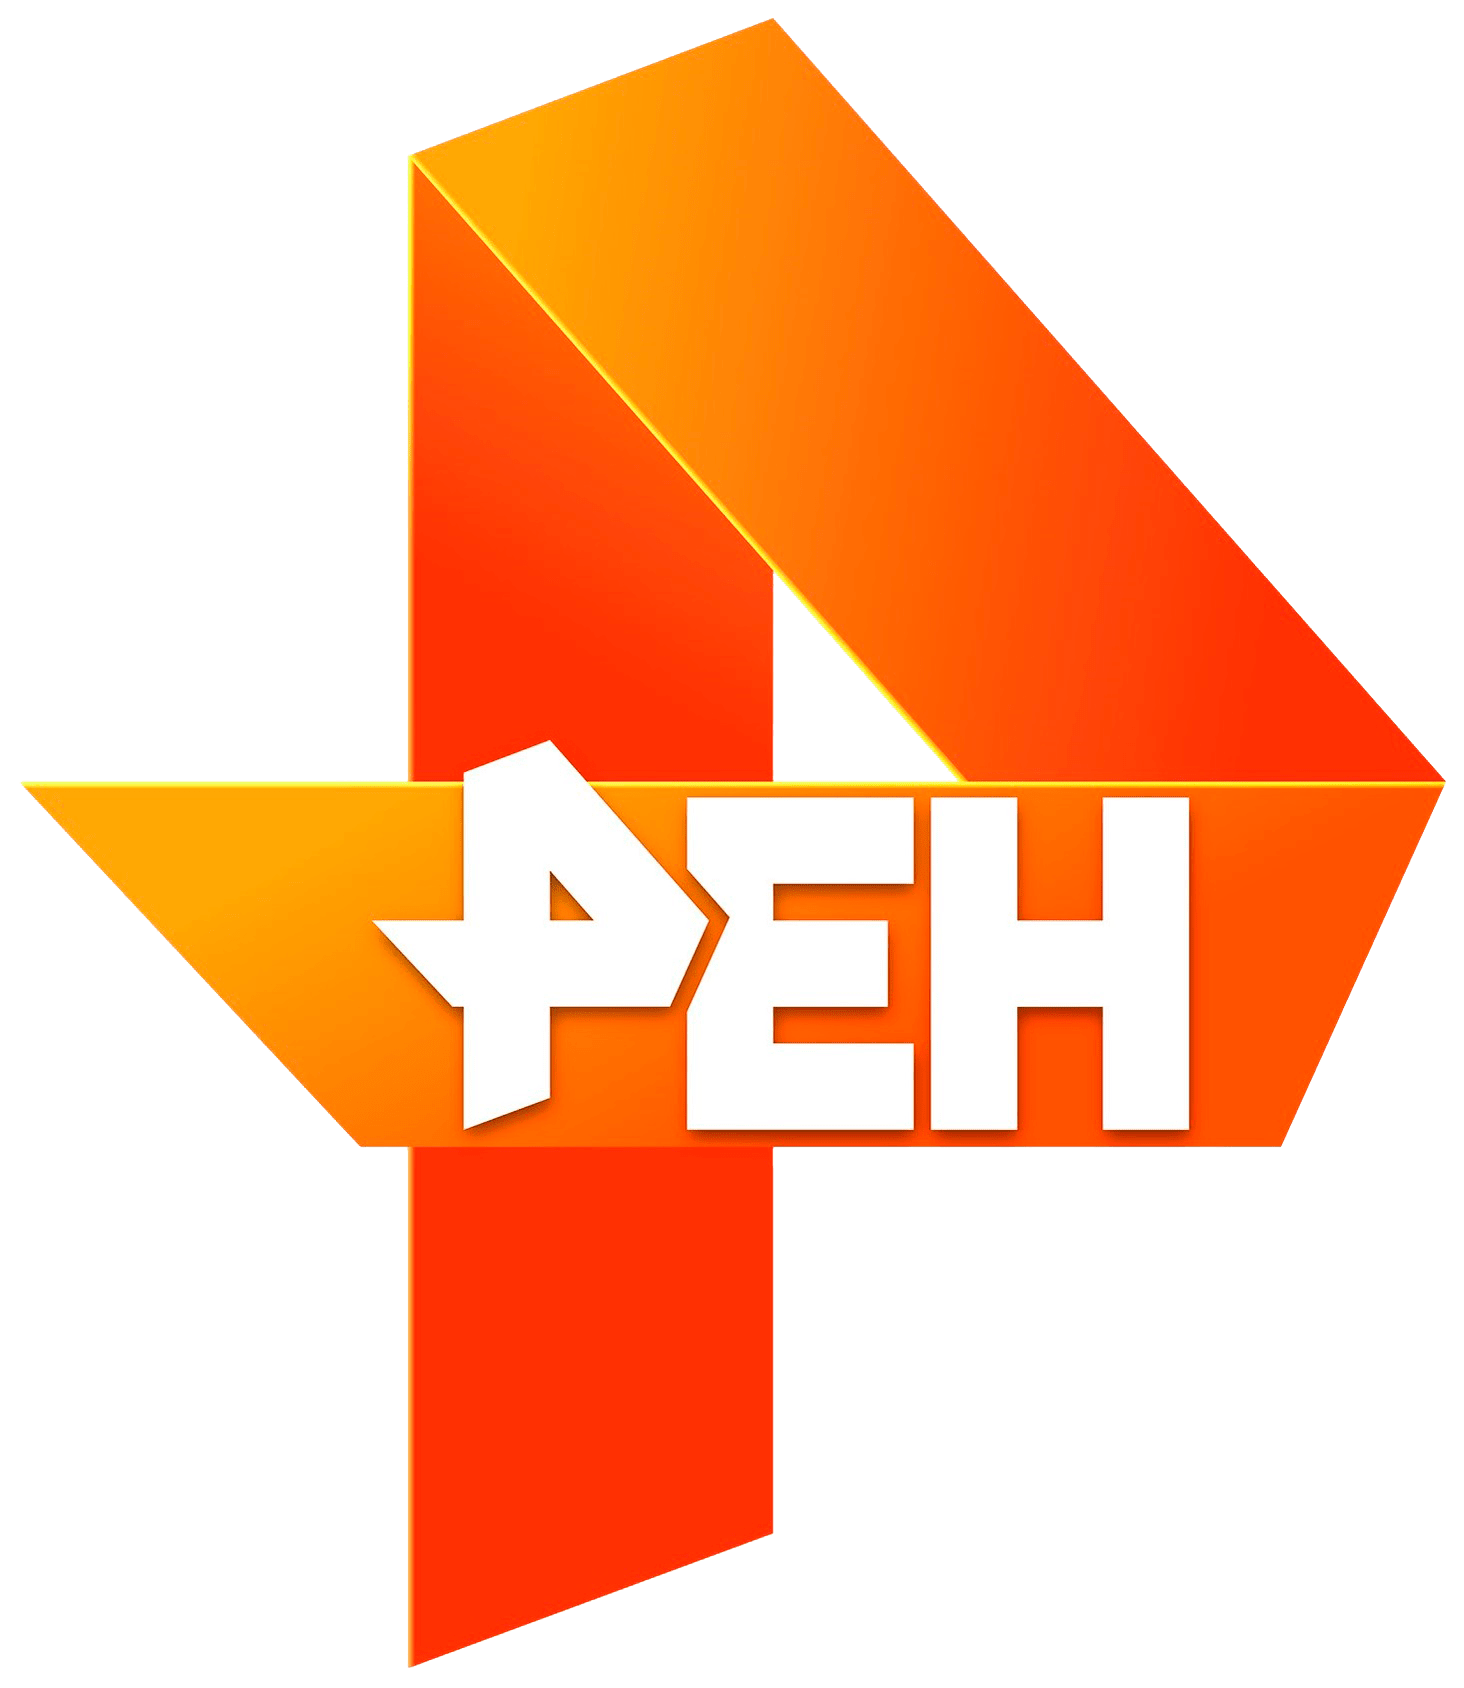 Раземщение рекламы РЕН ТВ, г.Екатеринбург